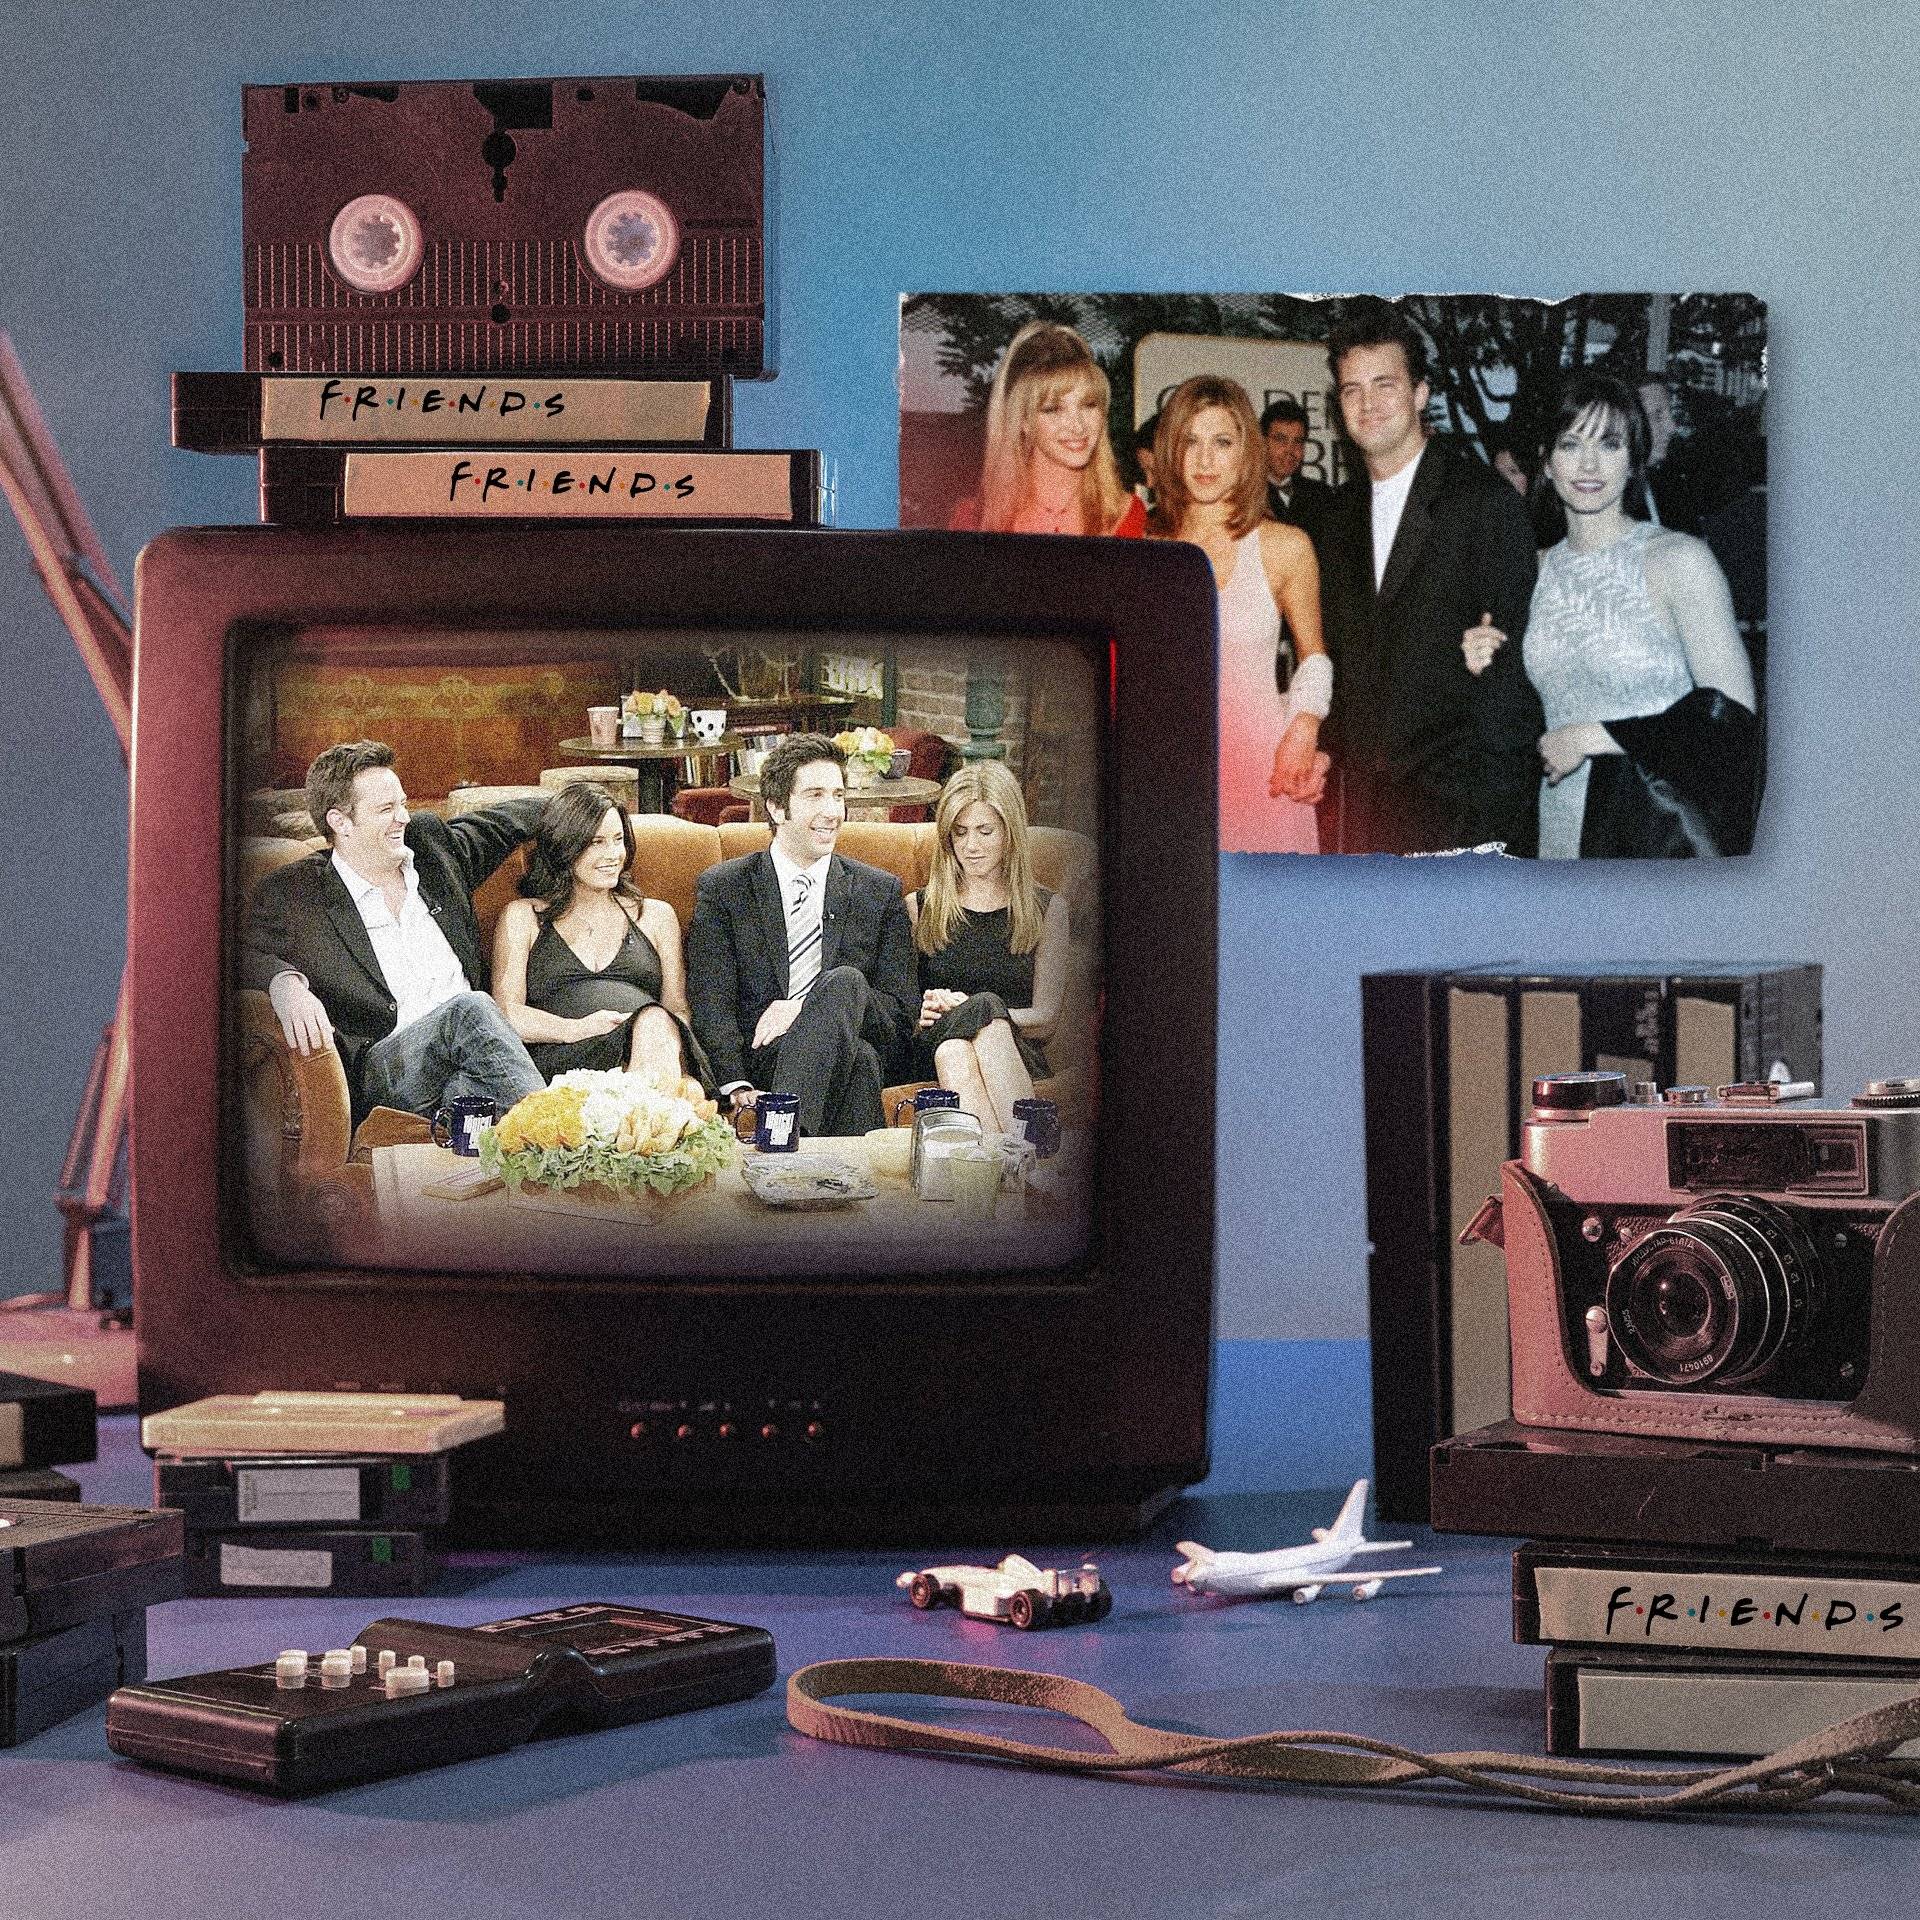 Telewizor, kasety, zdjęcia z postaciami z serialu Przyjaciele